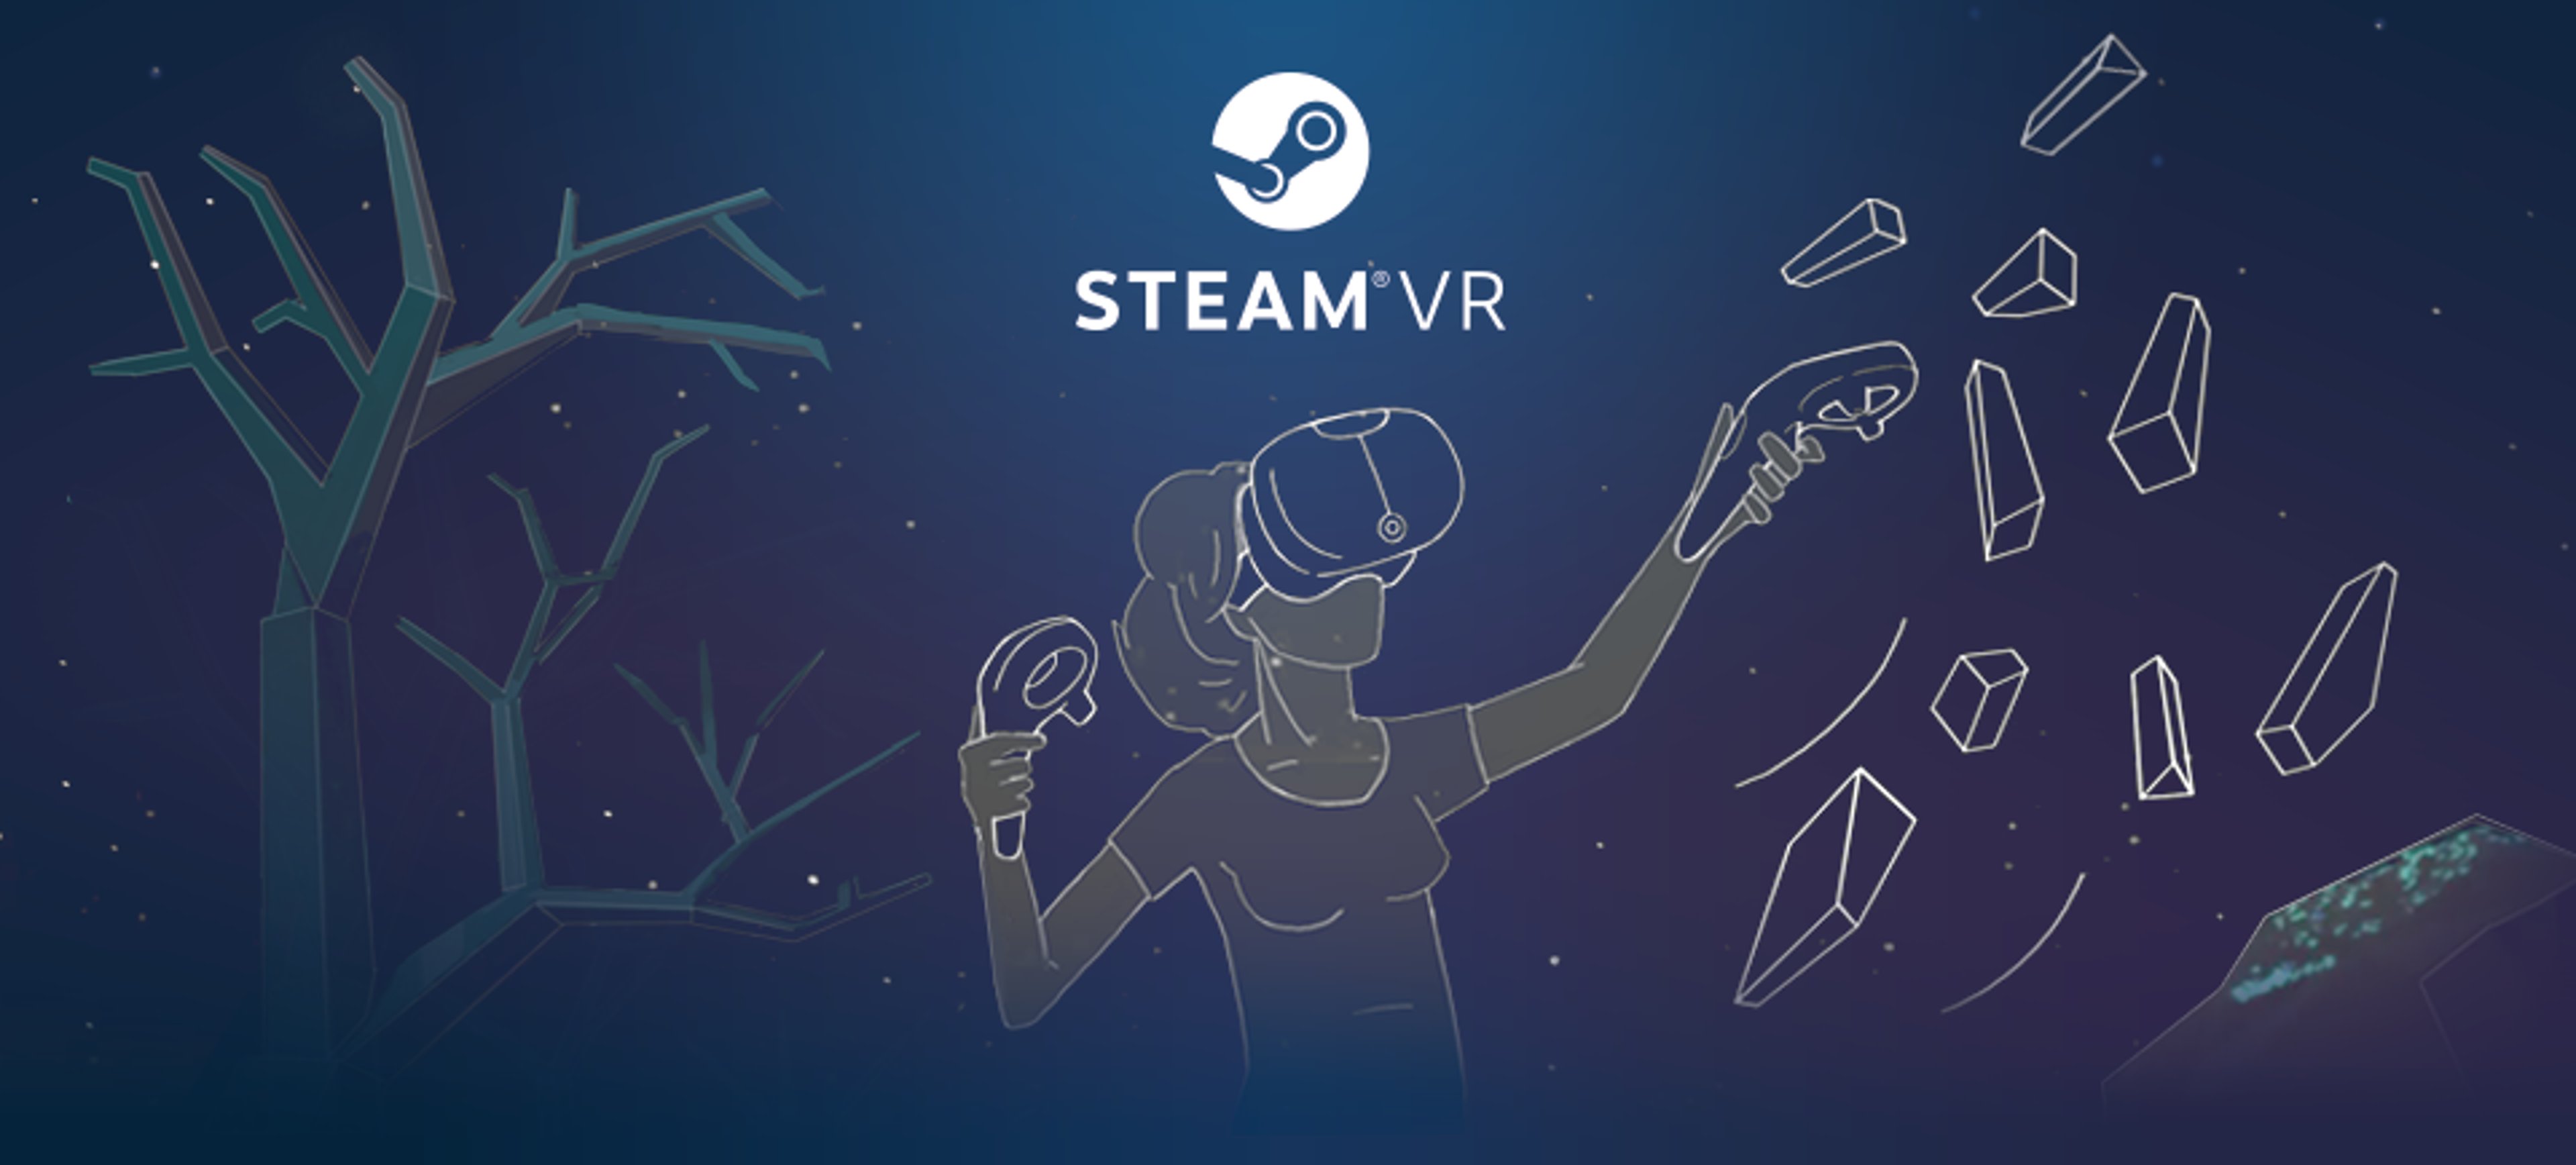 Saldi Steam VR primaverili : Vediamo il meglio! Cover